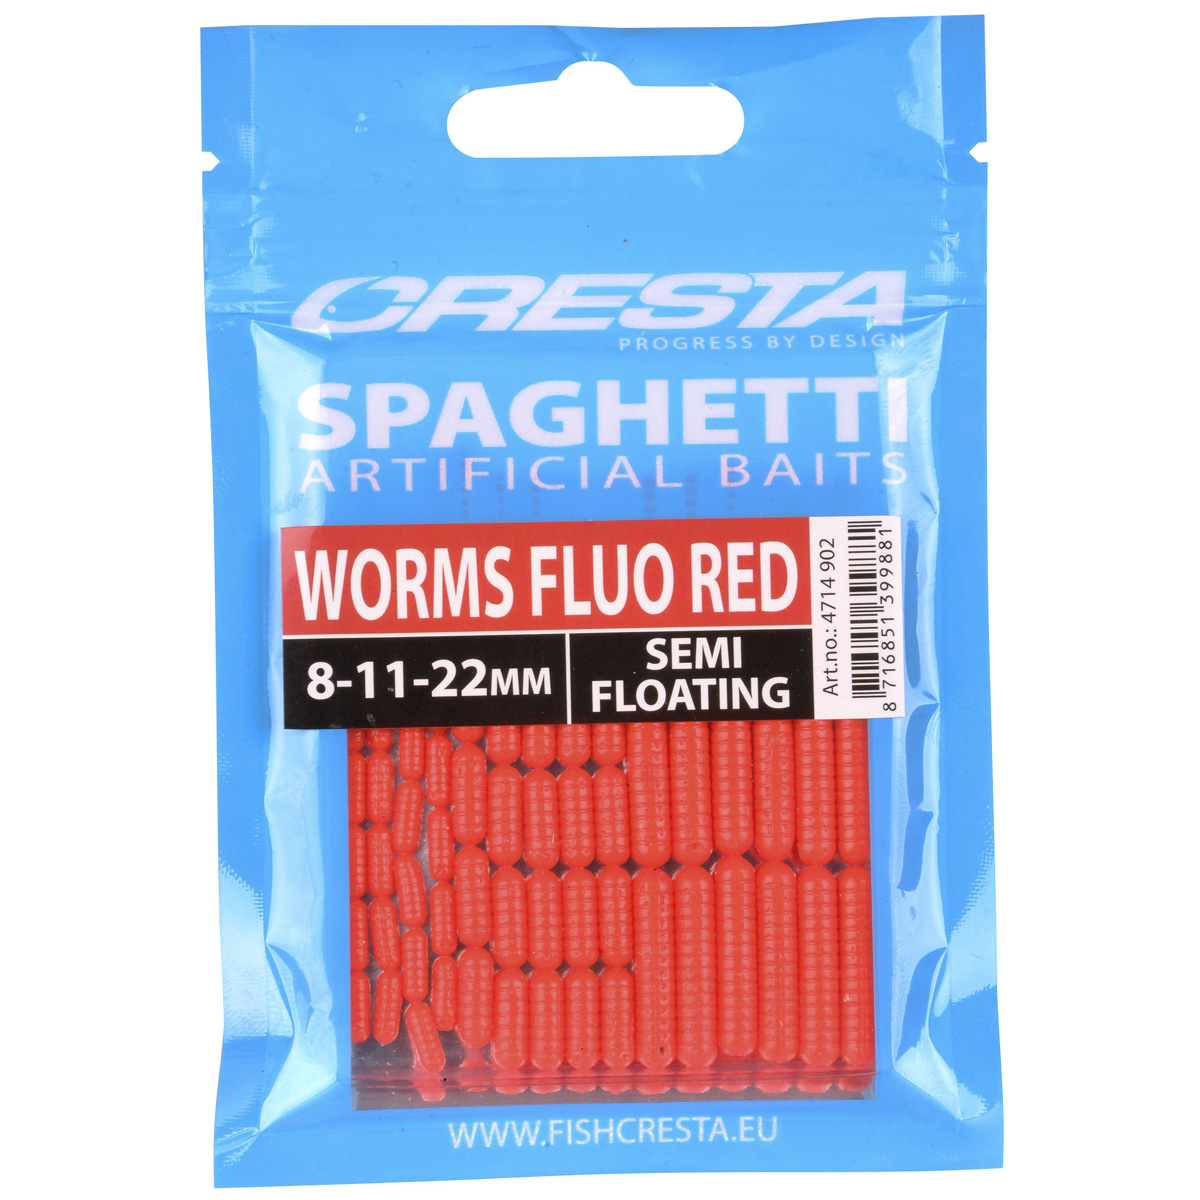 Esca di imitazione Cresta Spaghetti Worms - Fluo Red